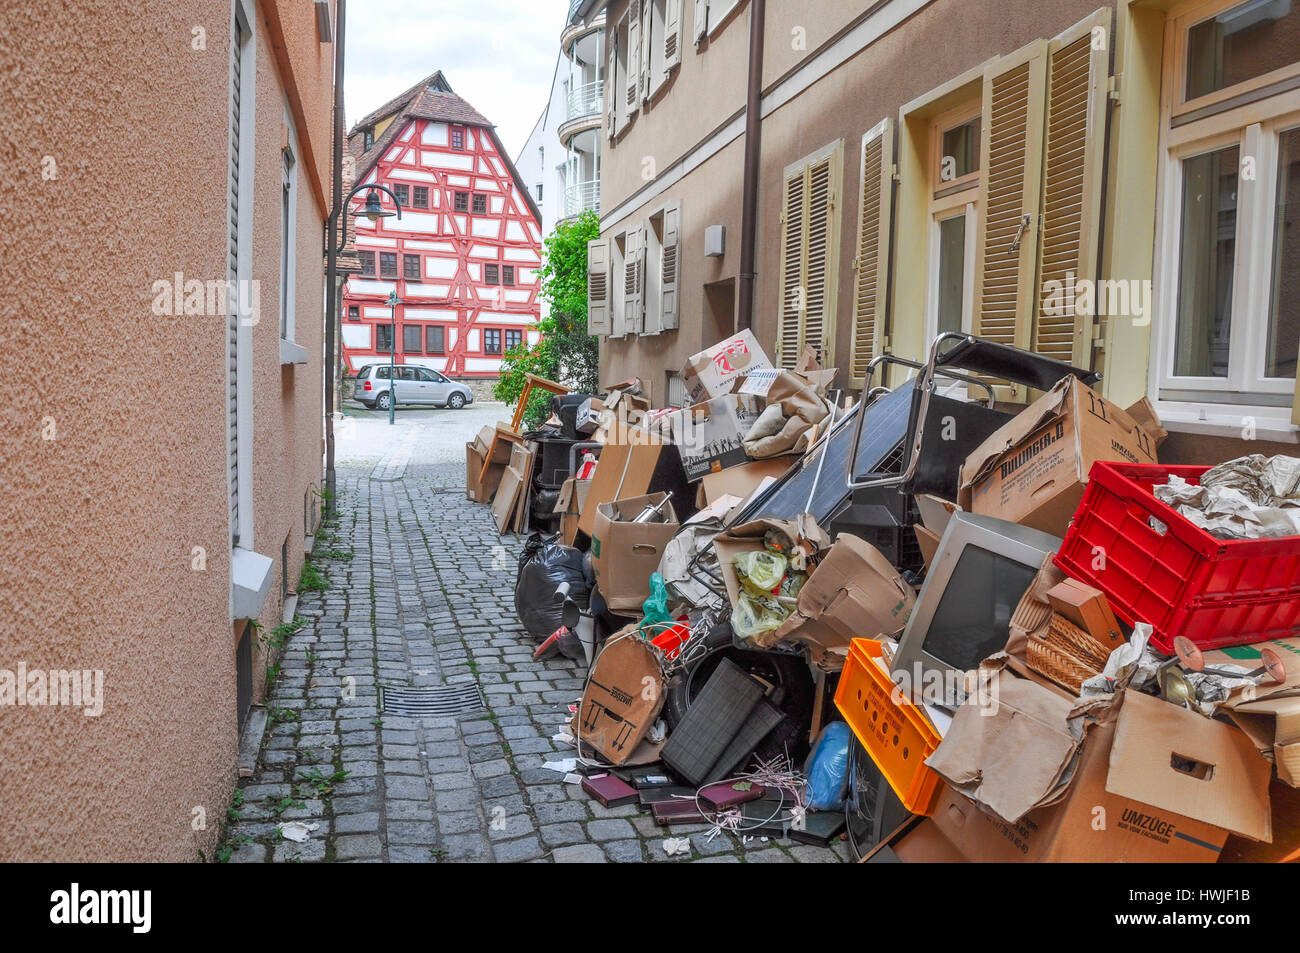 Bulky waste, Stuttgart-Bad Cannstatt, Bad Cannstadt, Neckar valley, Stuttgart, Germany Stock Photo